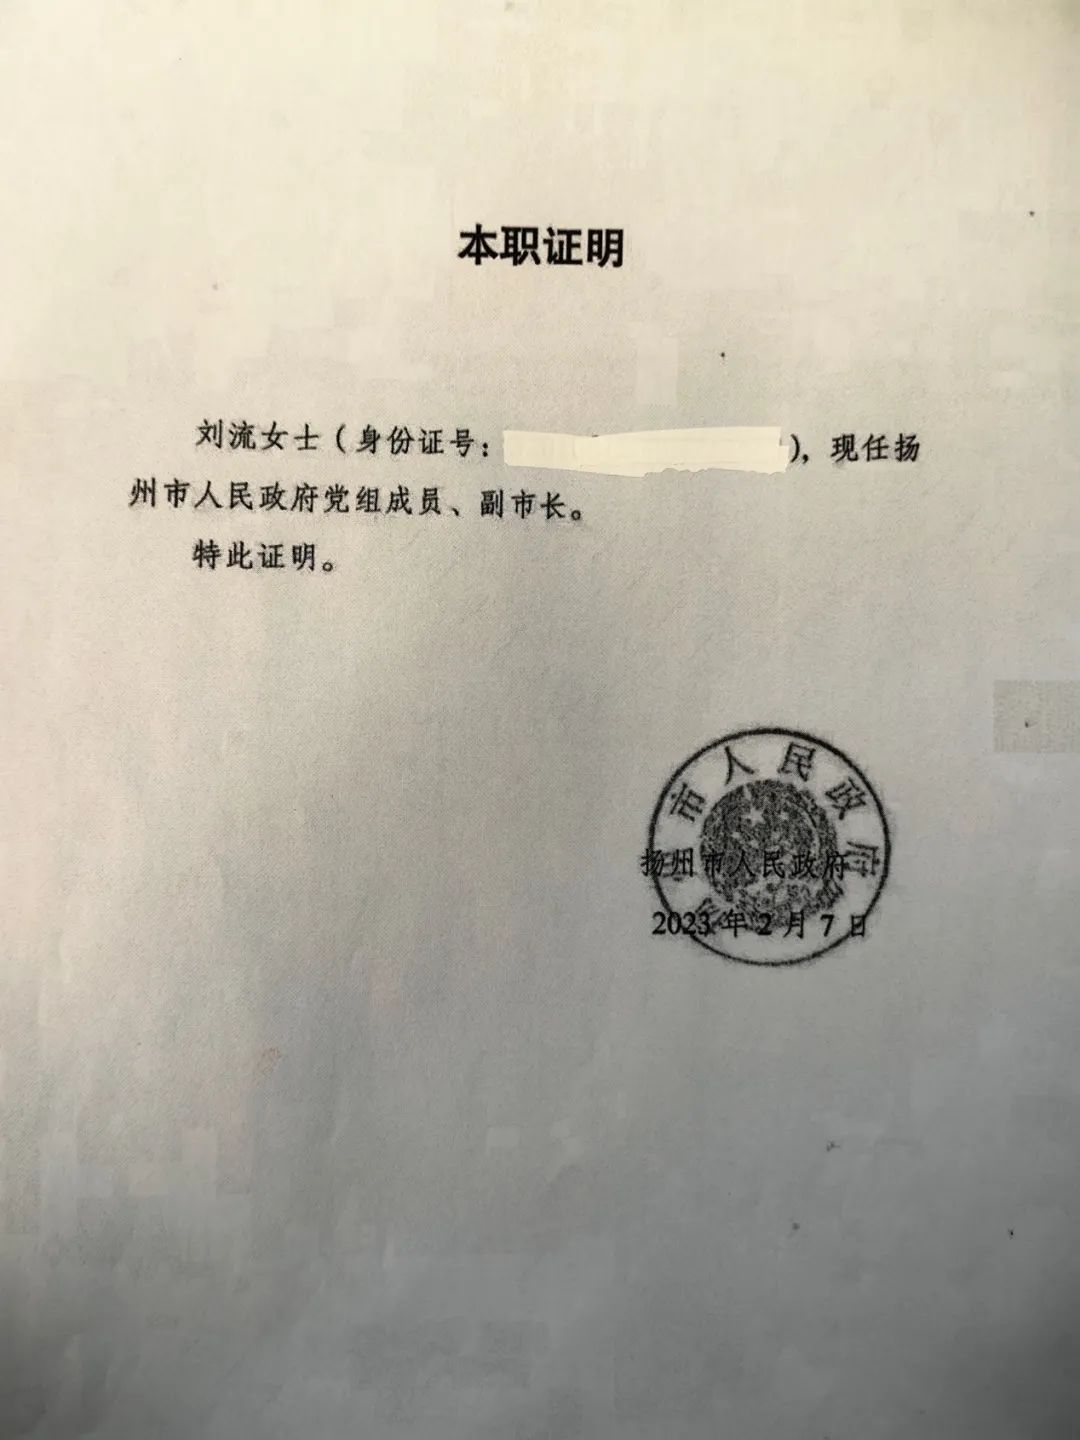 2月7日的本职证明清晰写有刘流的职务